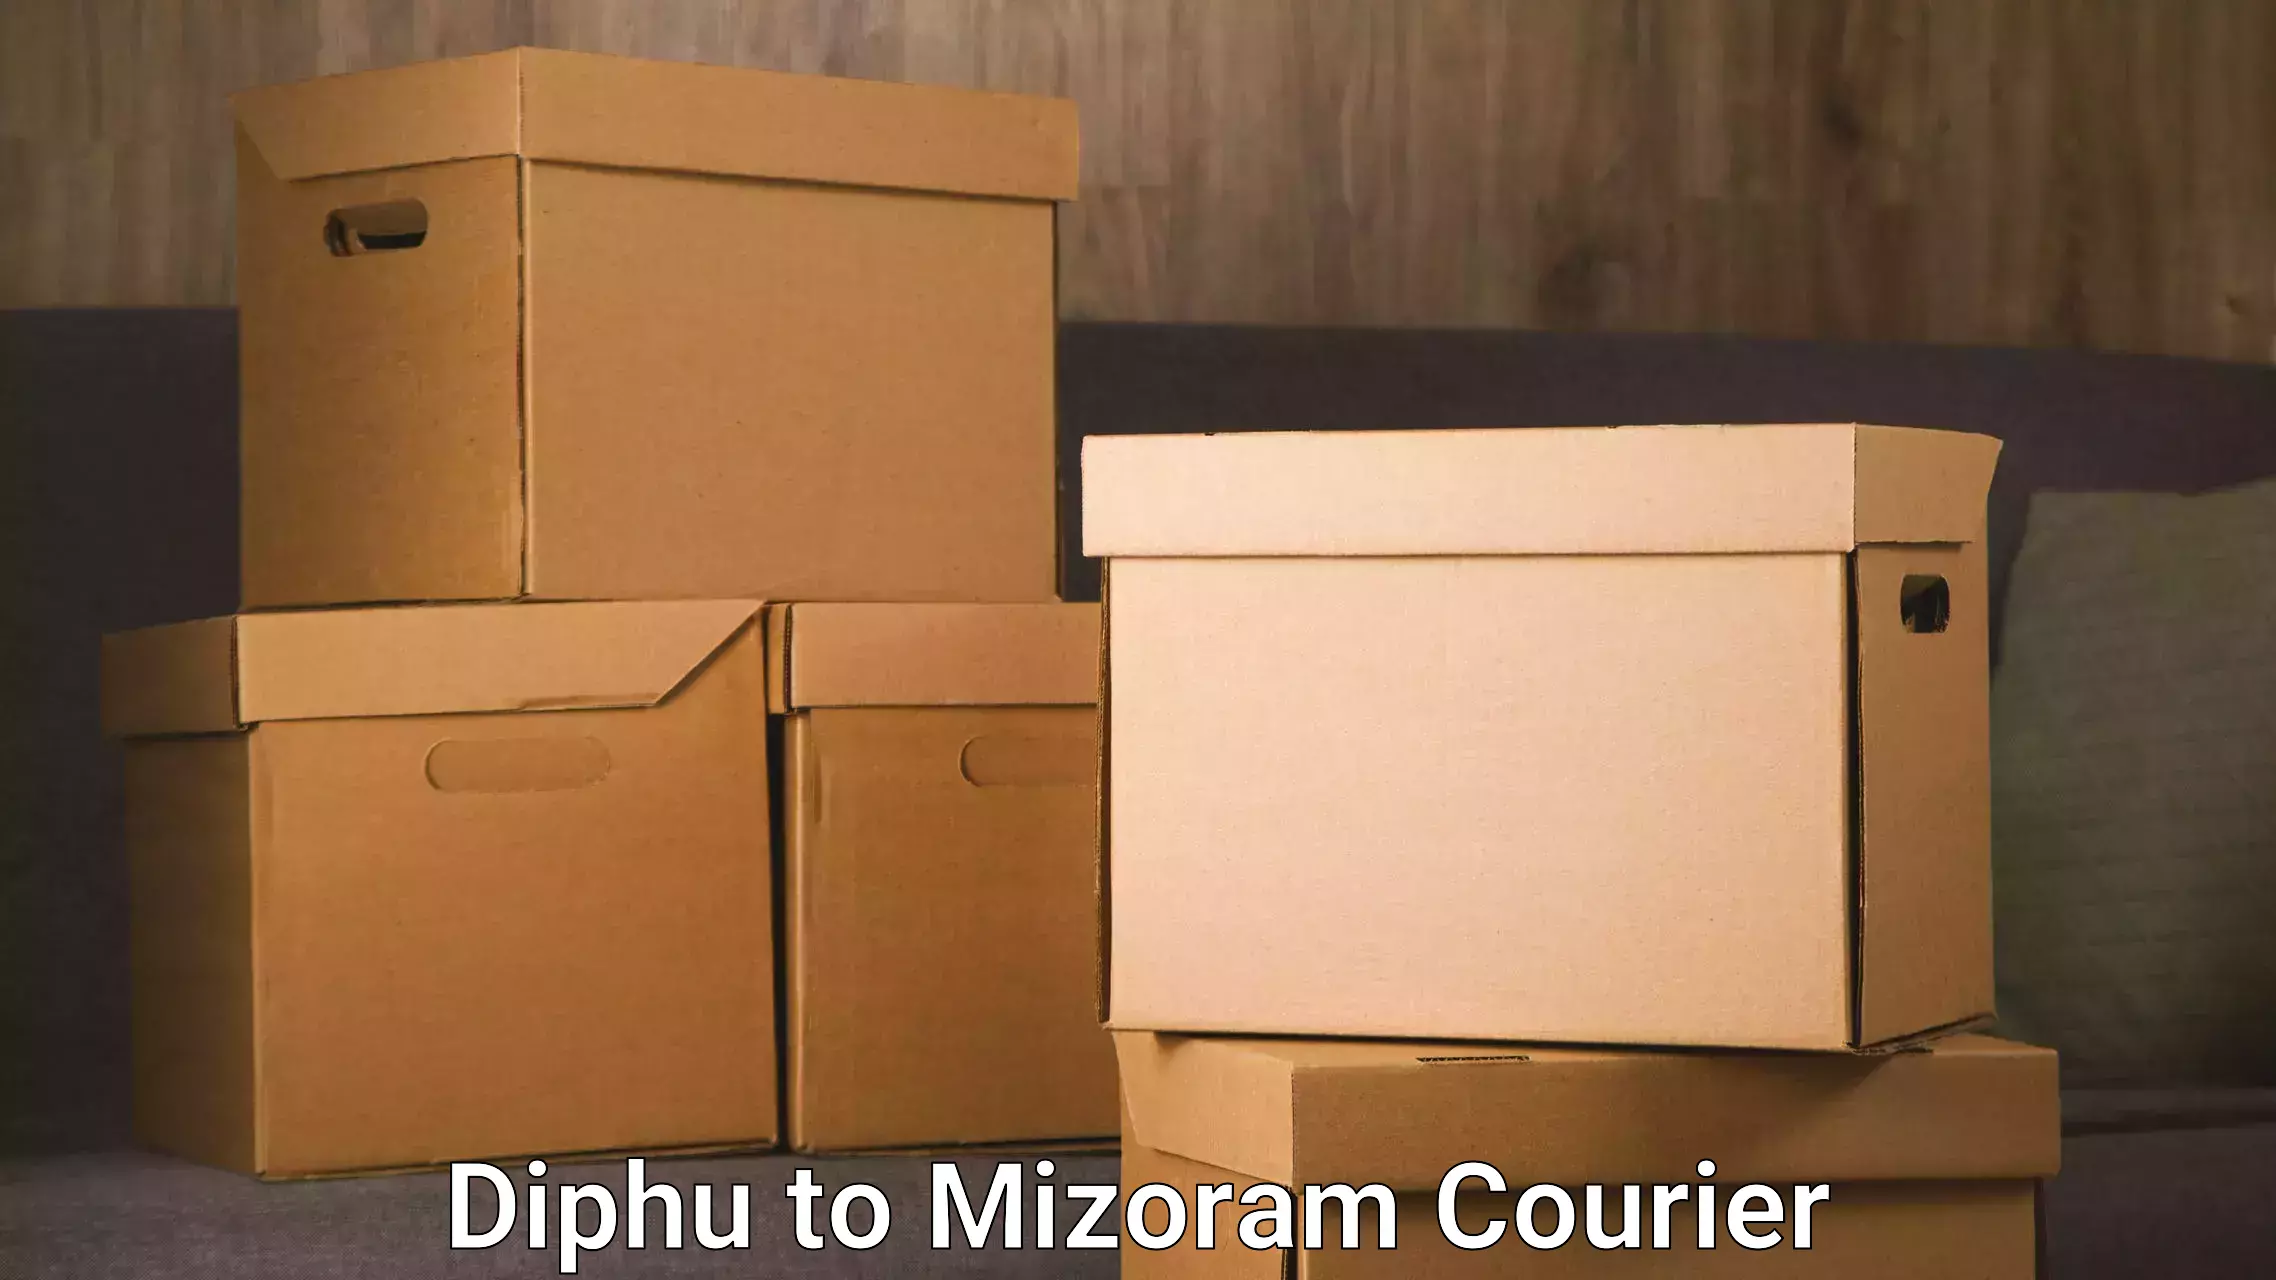 Express logistics service Diphu to Mizoram